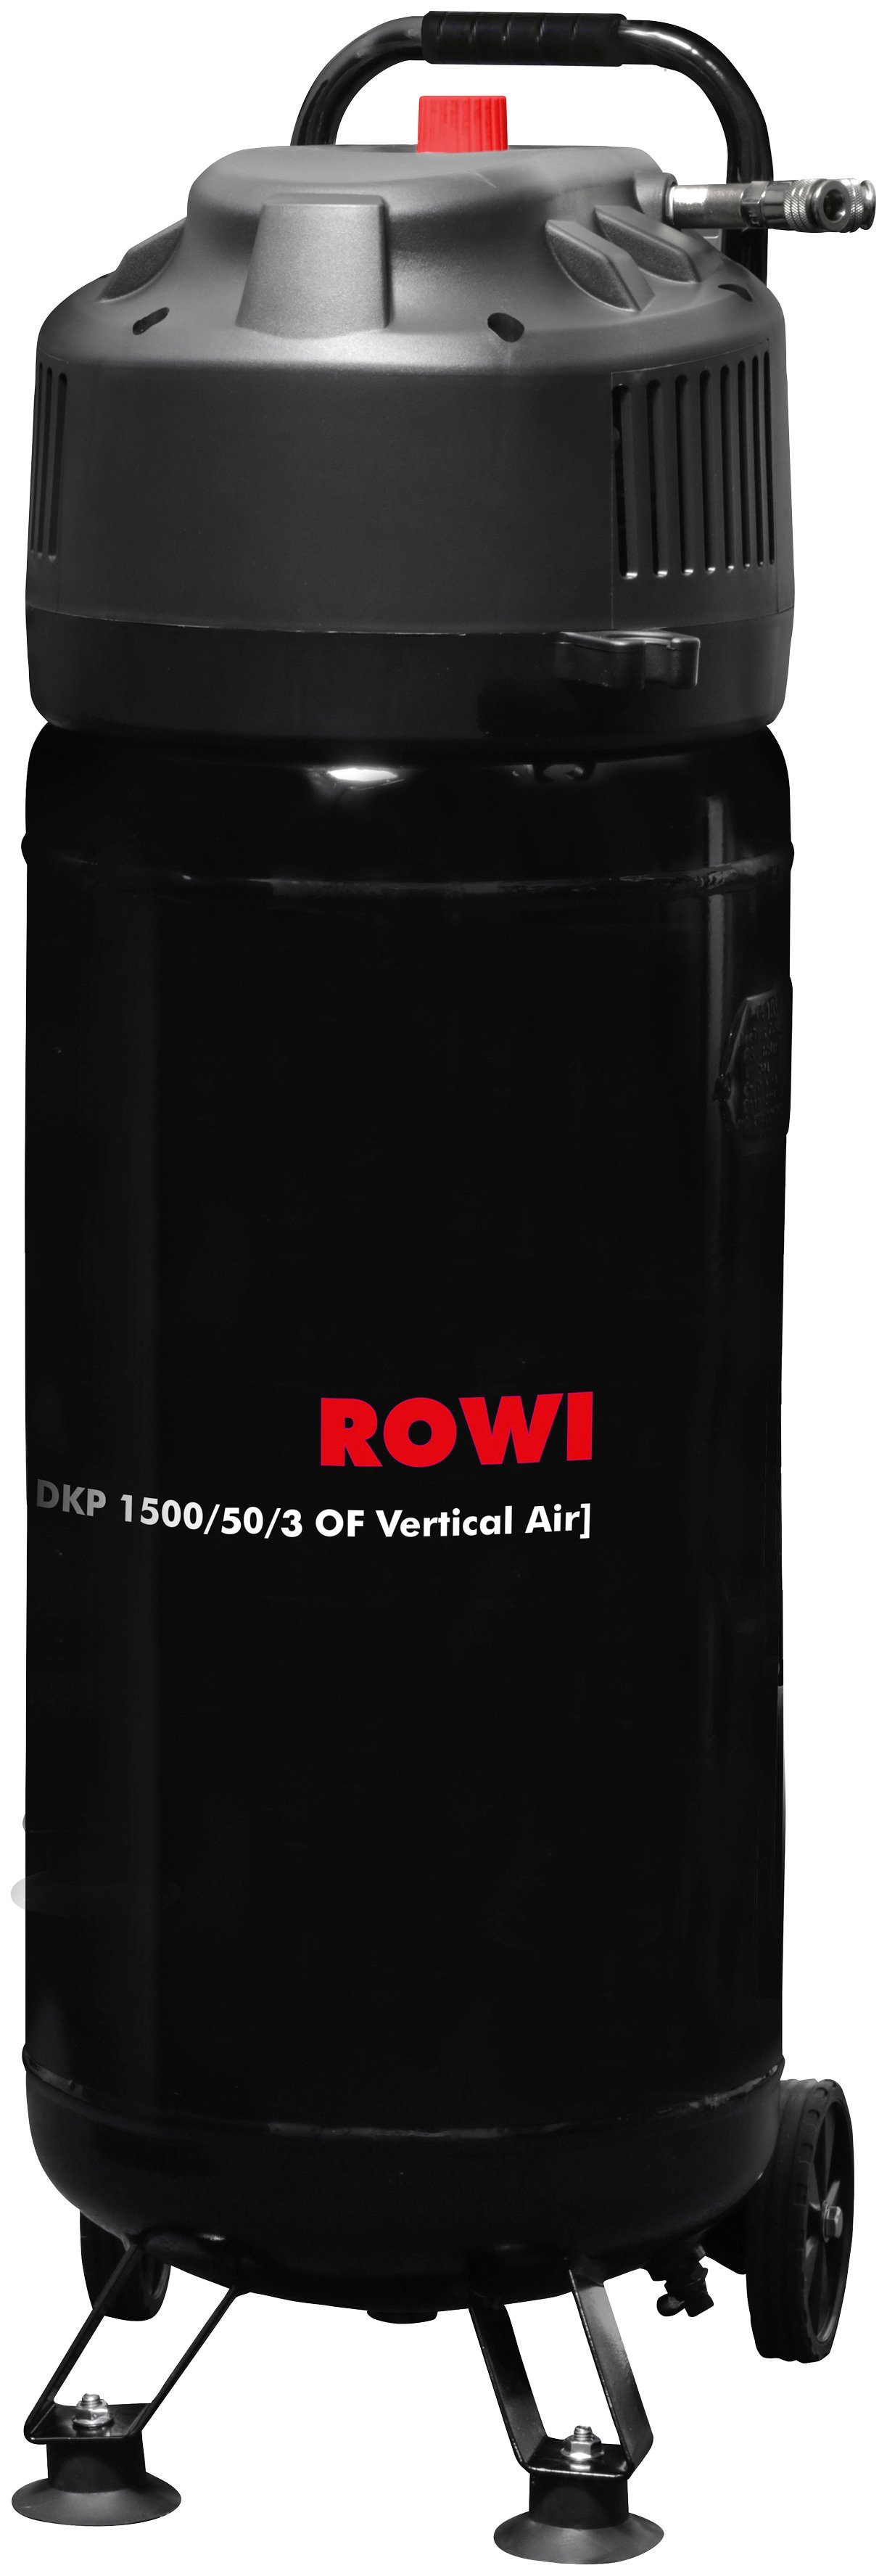 ROWI Kompressor DKP 1500/50/3 OF Vertical Air, 1500 W, max. 10 bar, 50 l